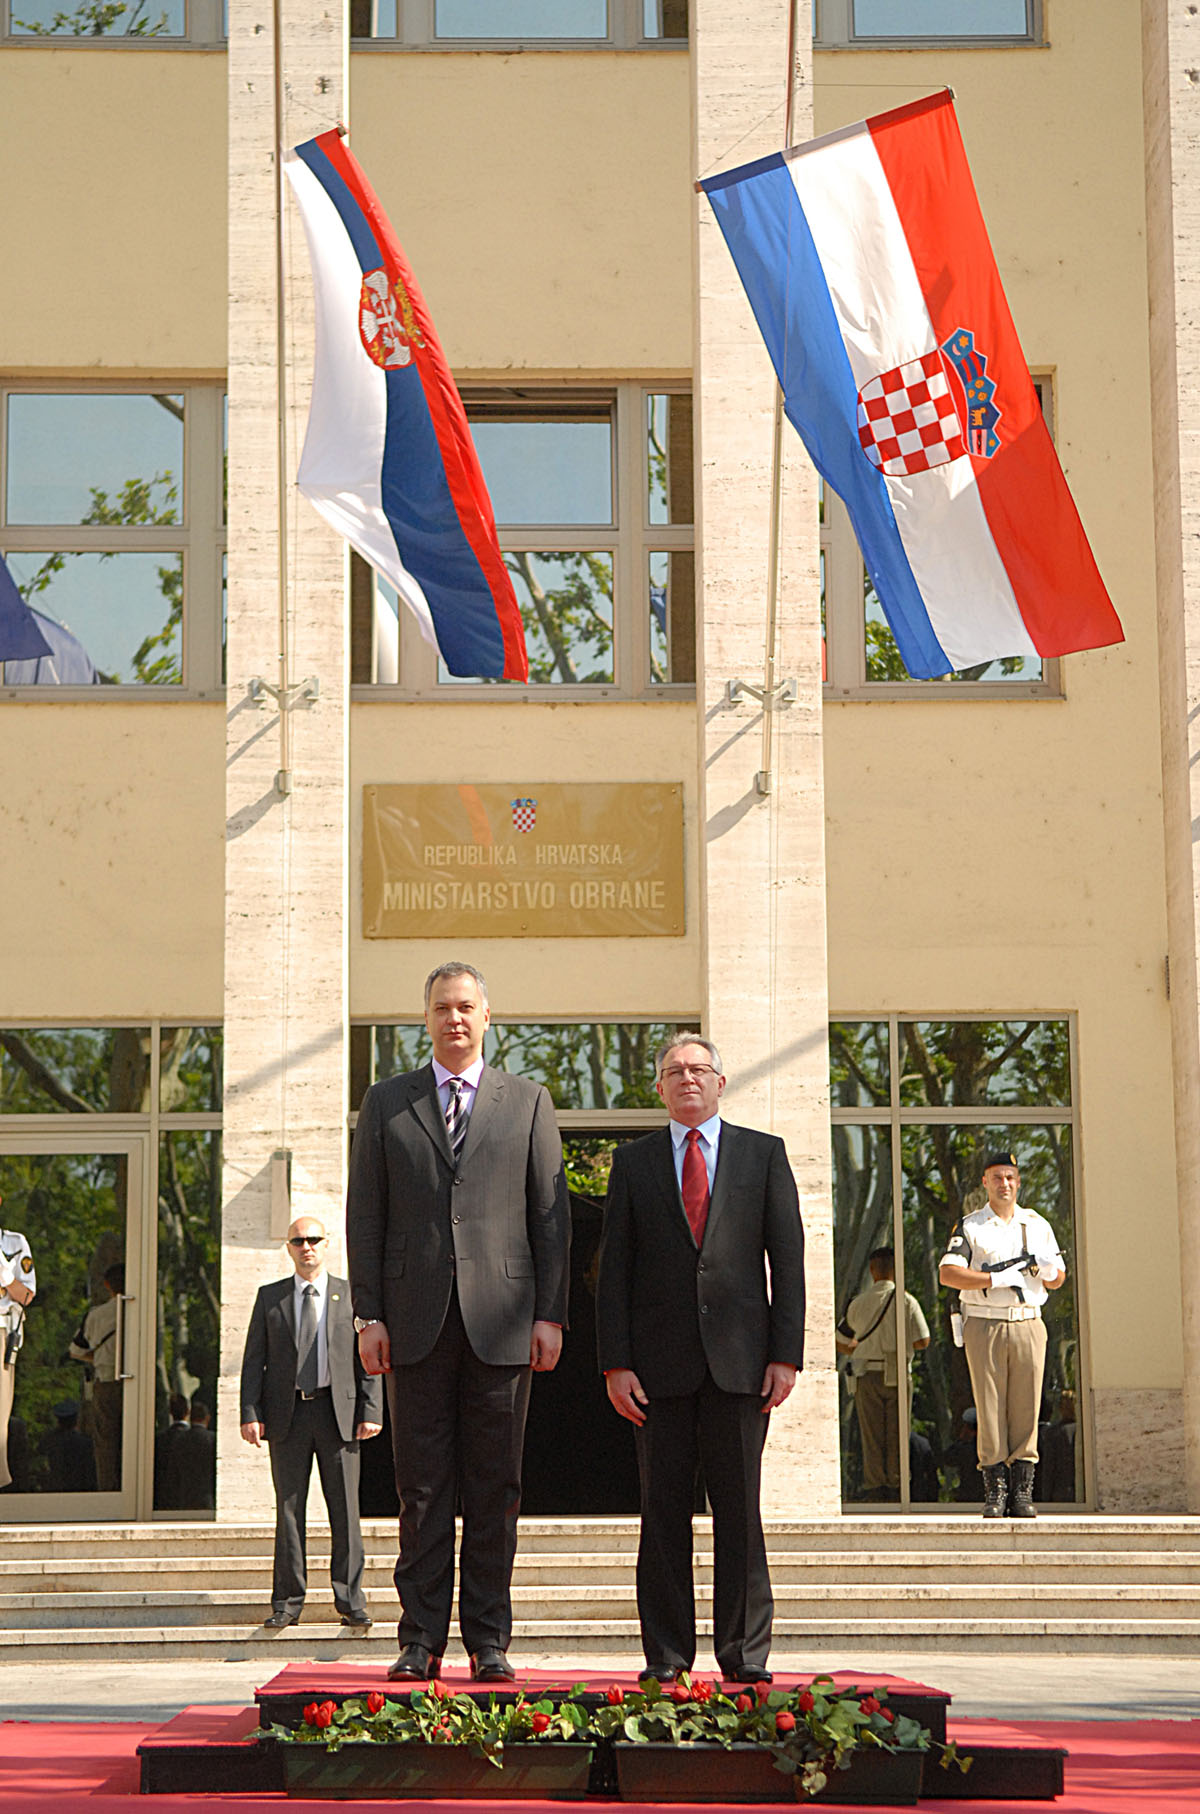 Ministri obrane Hrvatske i Srbije potpisali Sporazum o suradnji